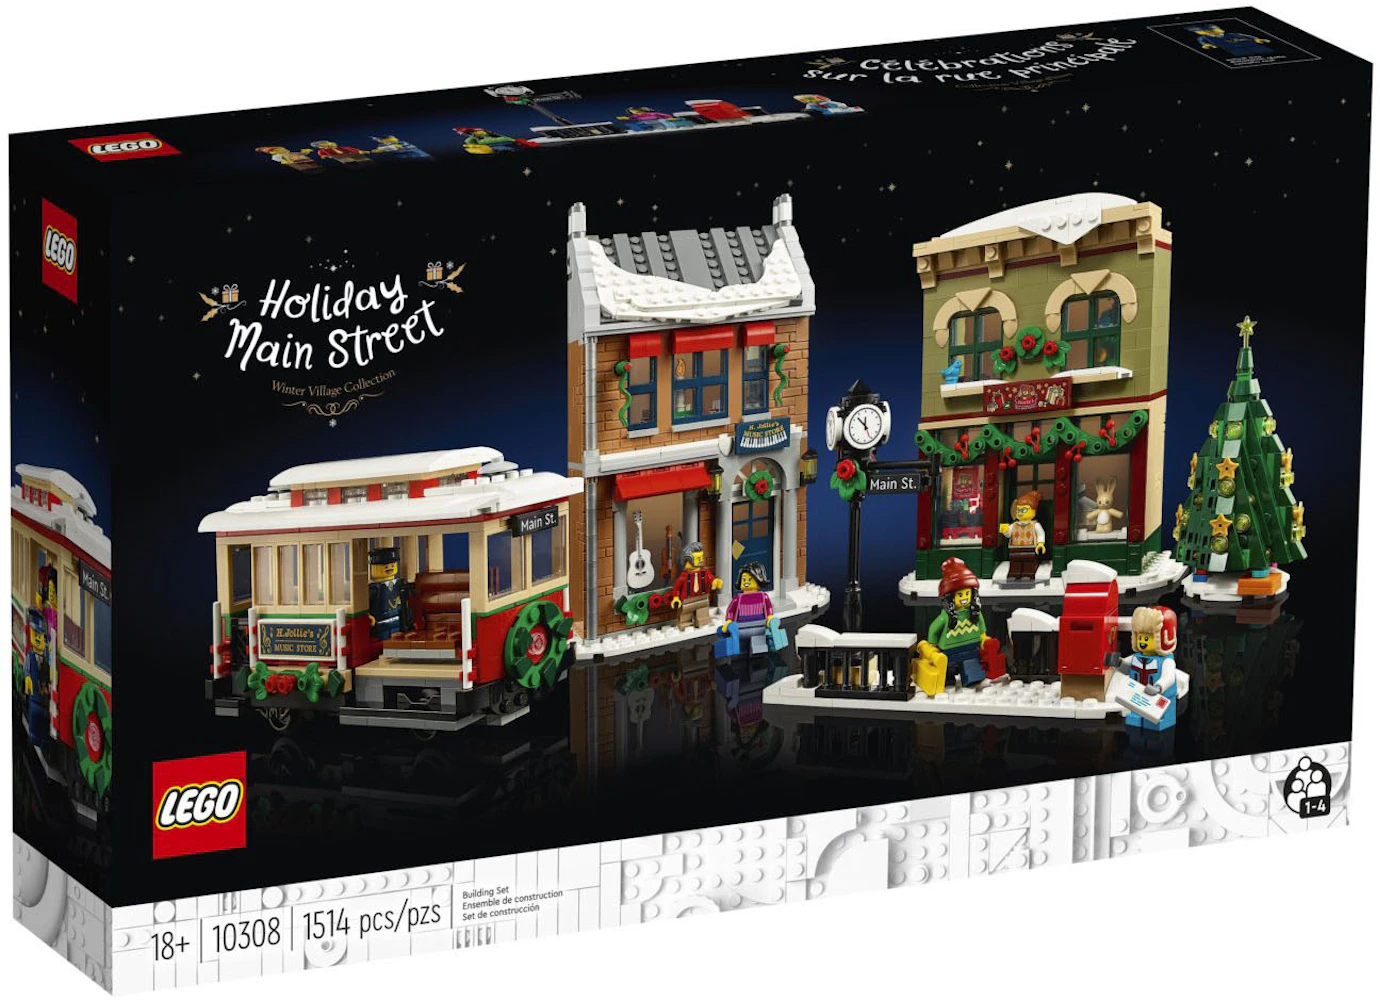 Mount Bank garage tildeling LEGO Winter Village Holiday Main Street Set 10308 - US